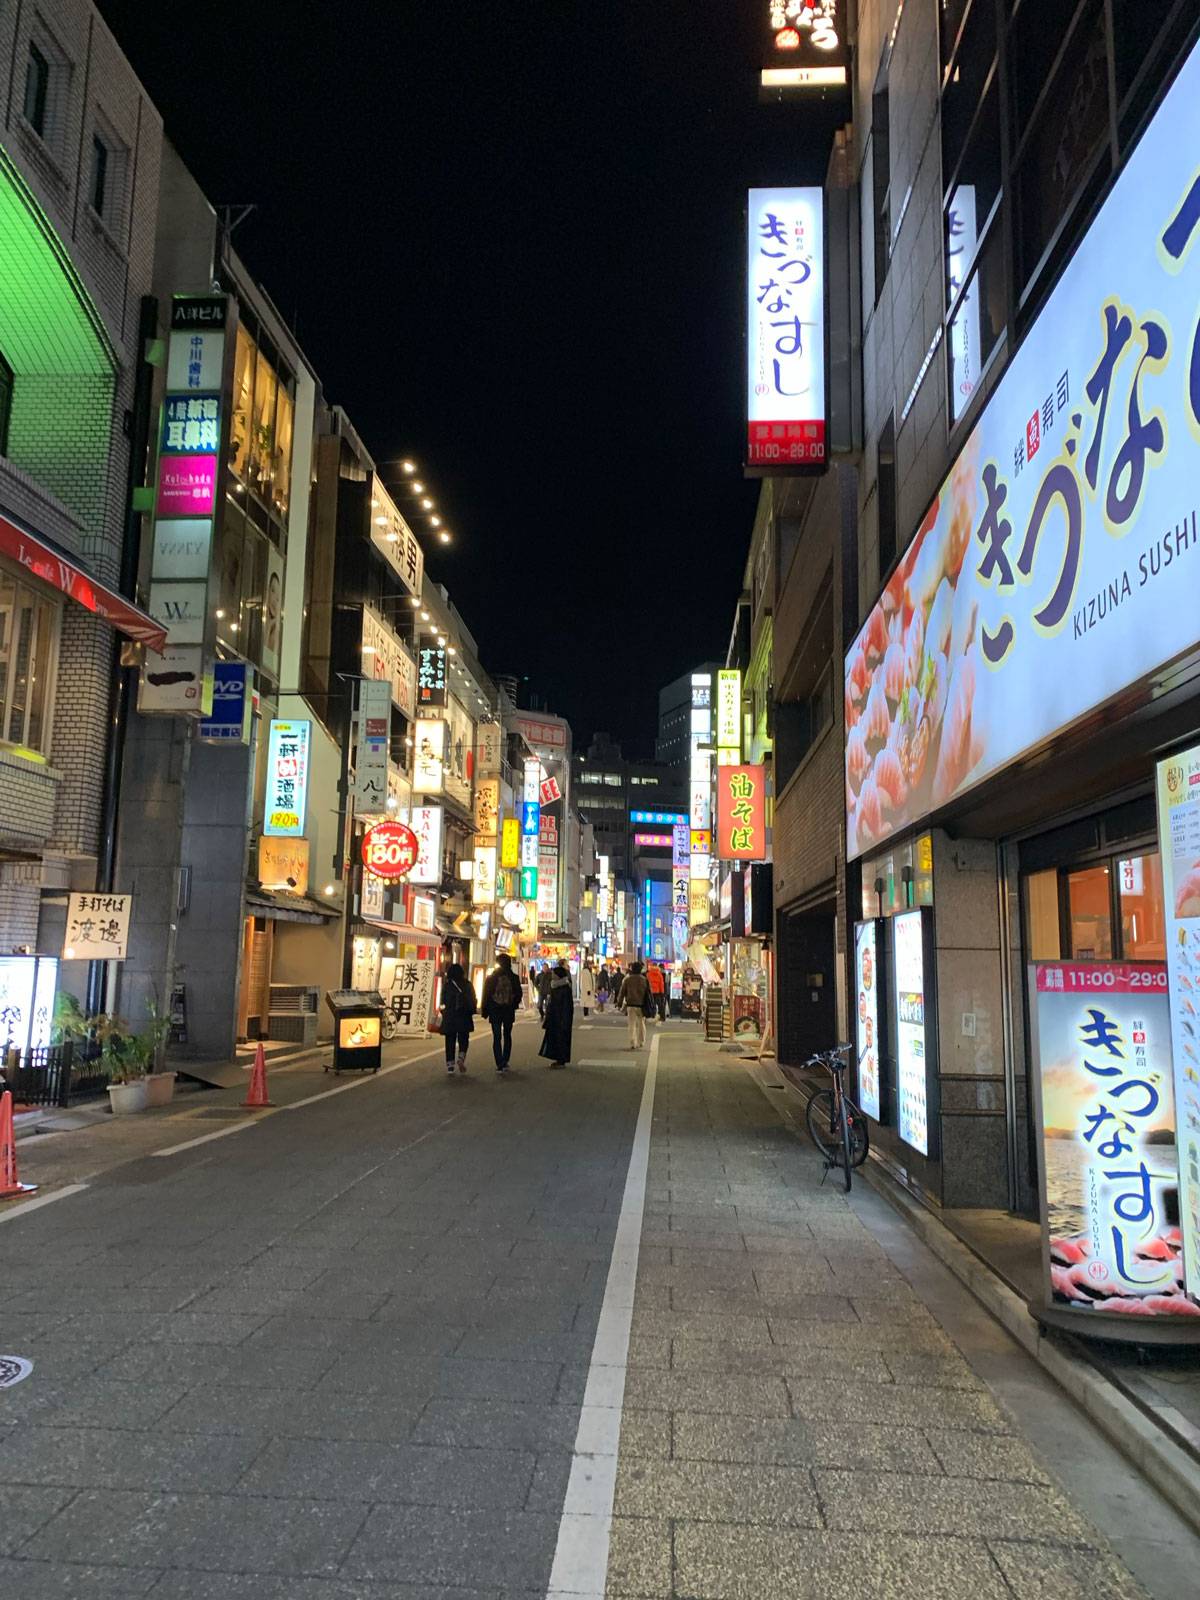 Heading down a Shinjuku alley